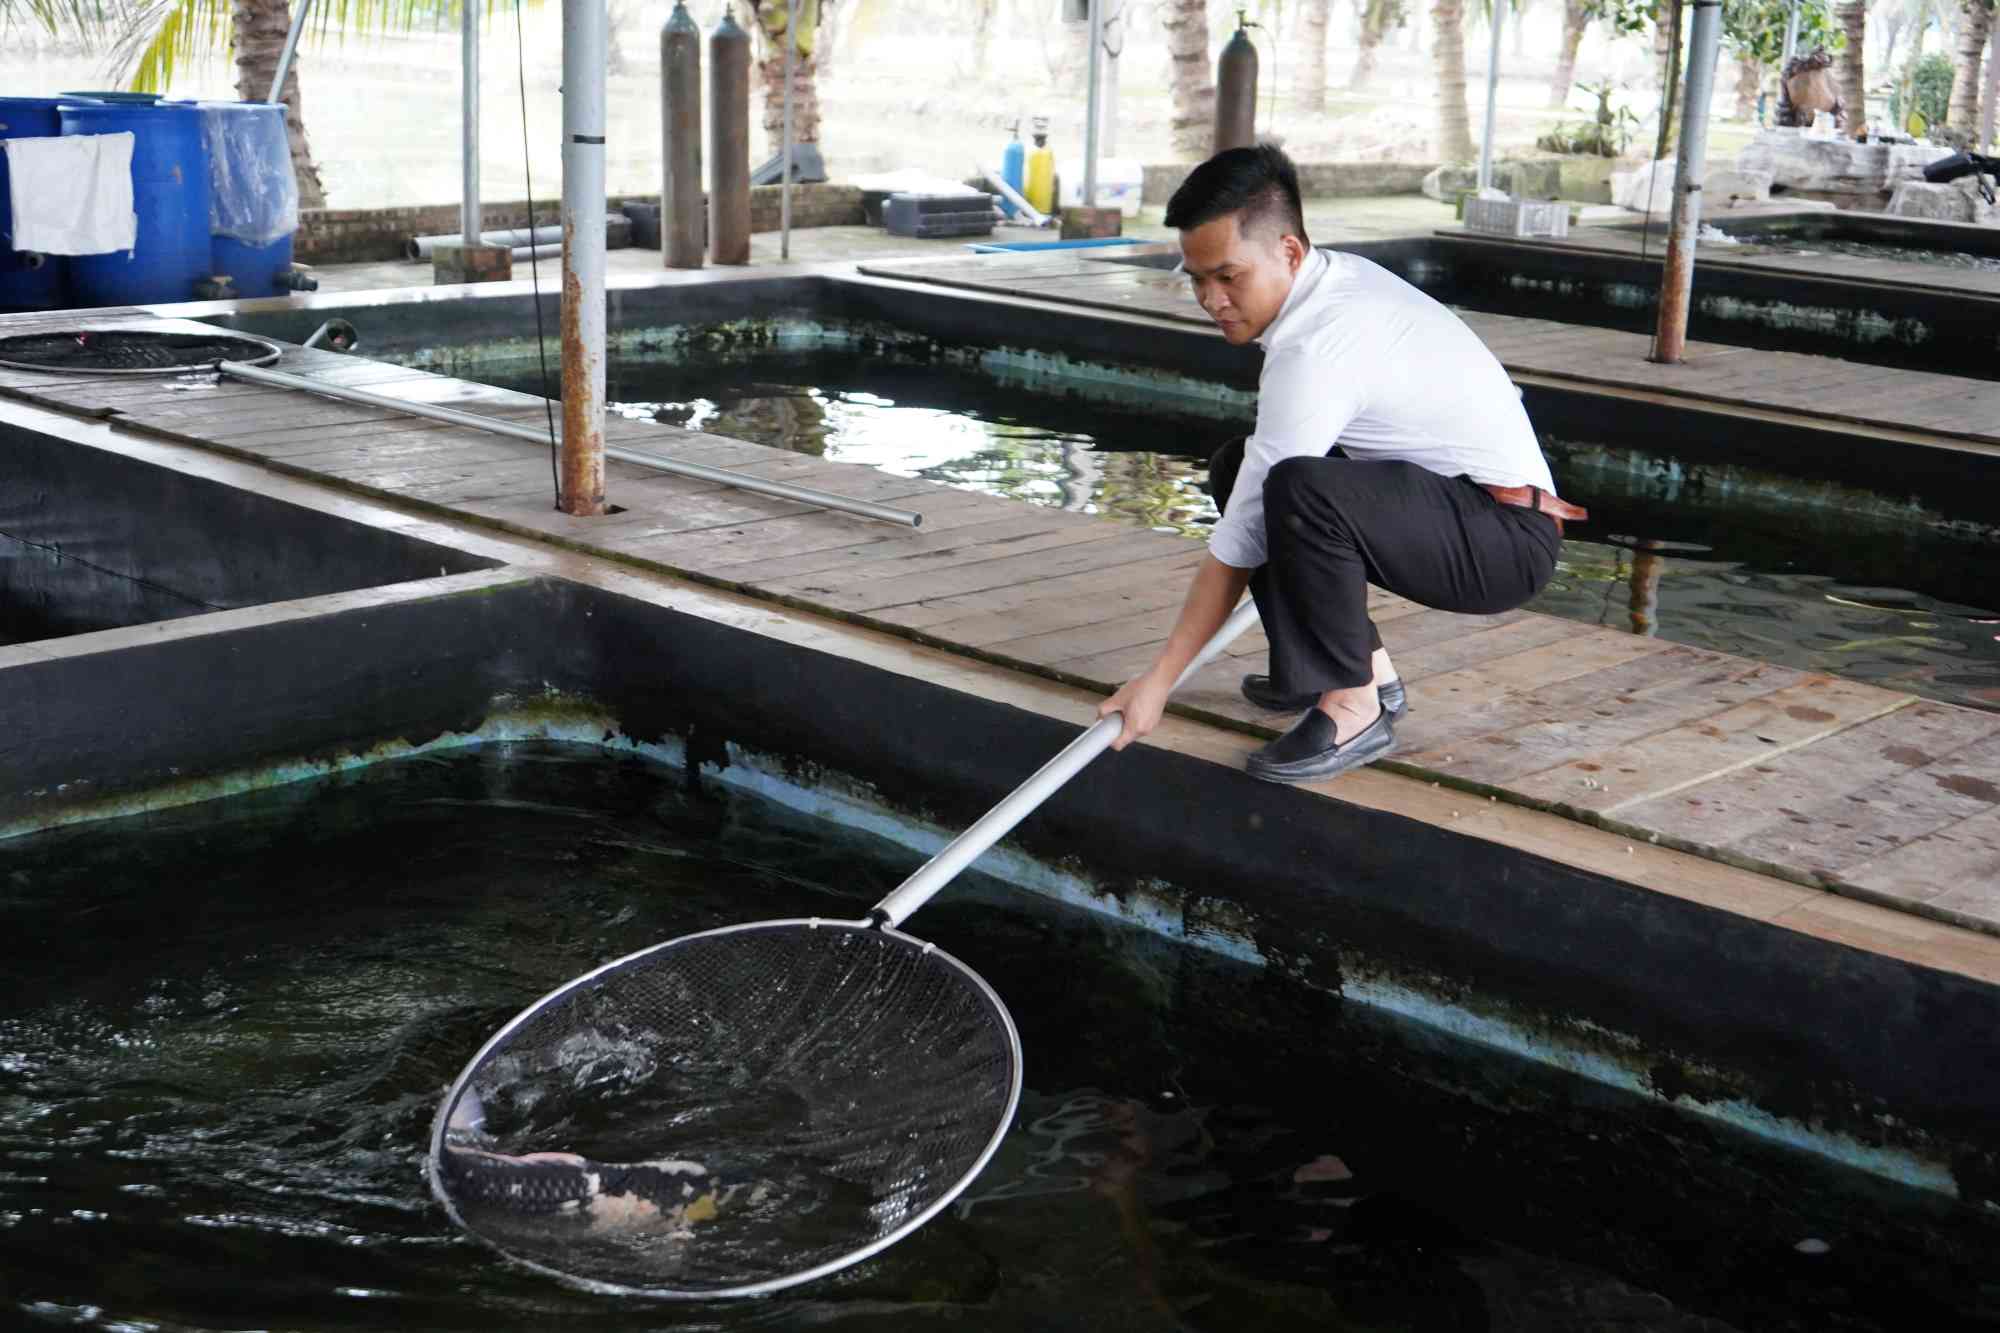 Anh Vũ Văn Quân hiện là chủ trang trại cá Koi rộng hơn 5 ha. Ảnh: Mai Dung